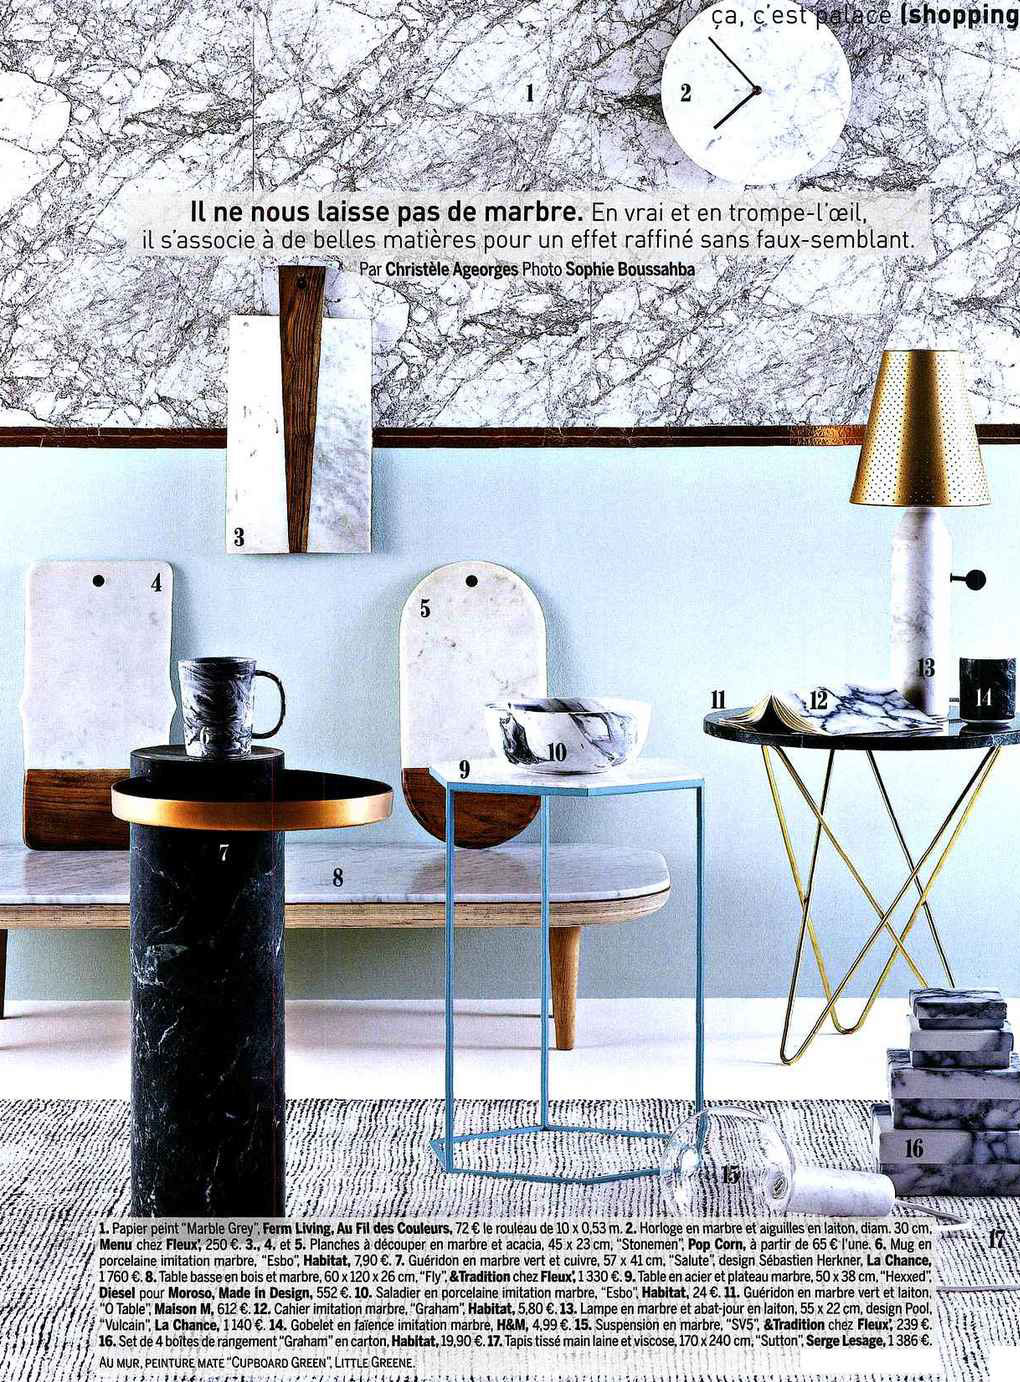 Marble de Ferm Living, Magazine Marie-Claire Maison octobre 2015